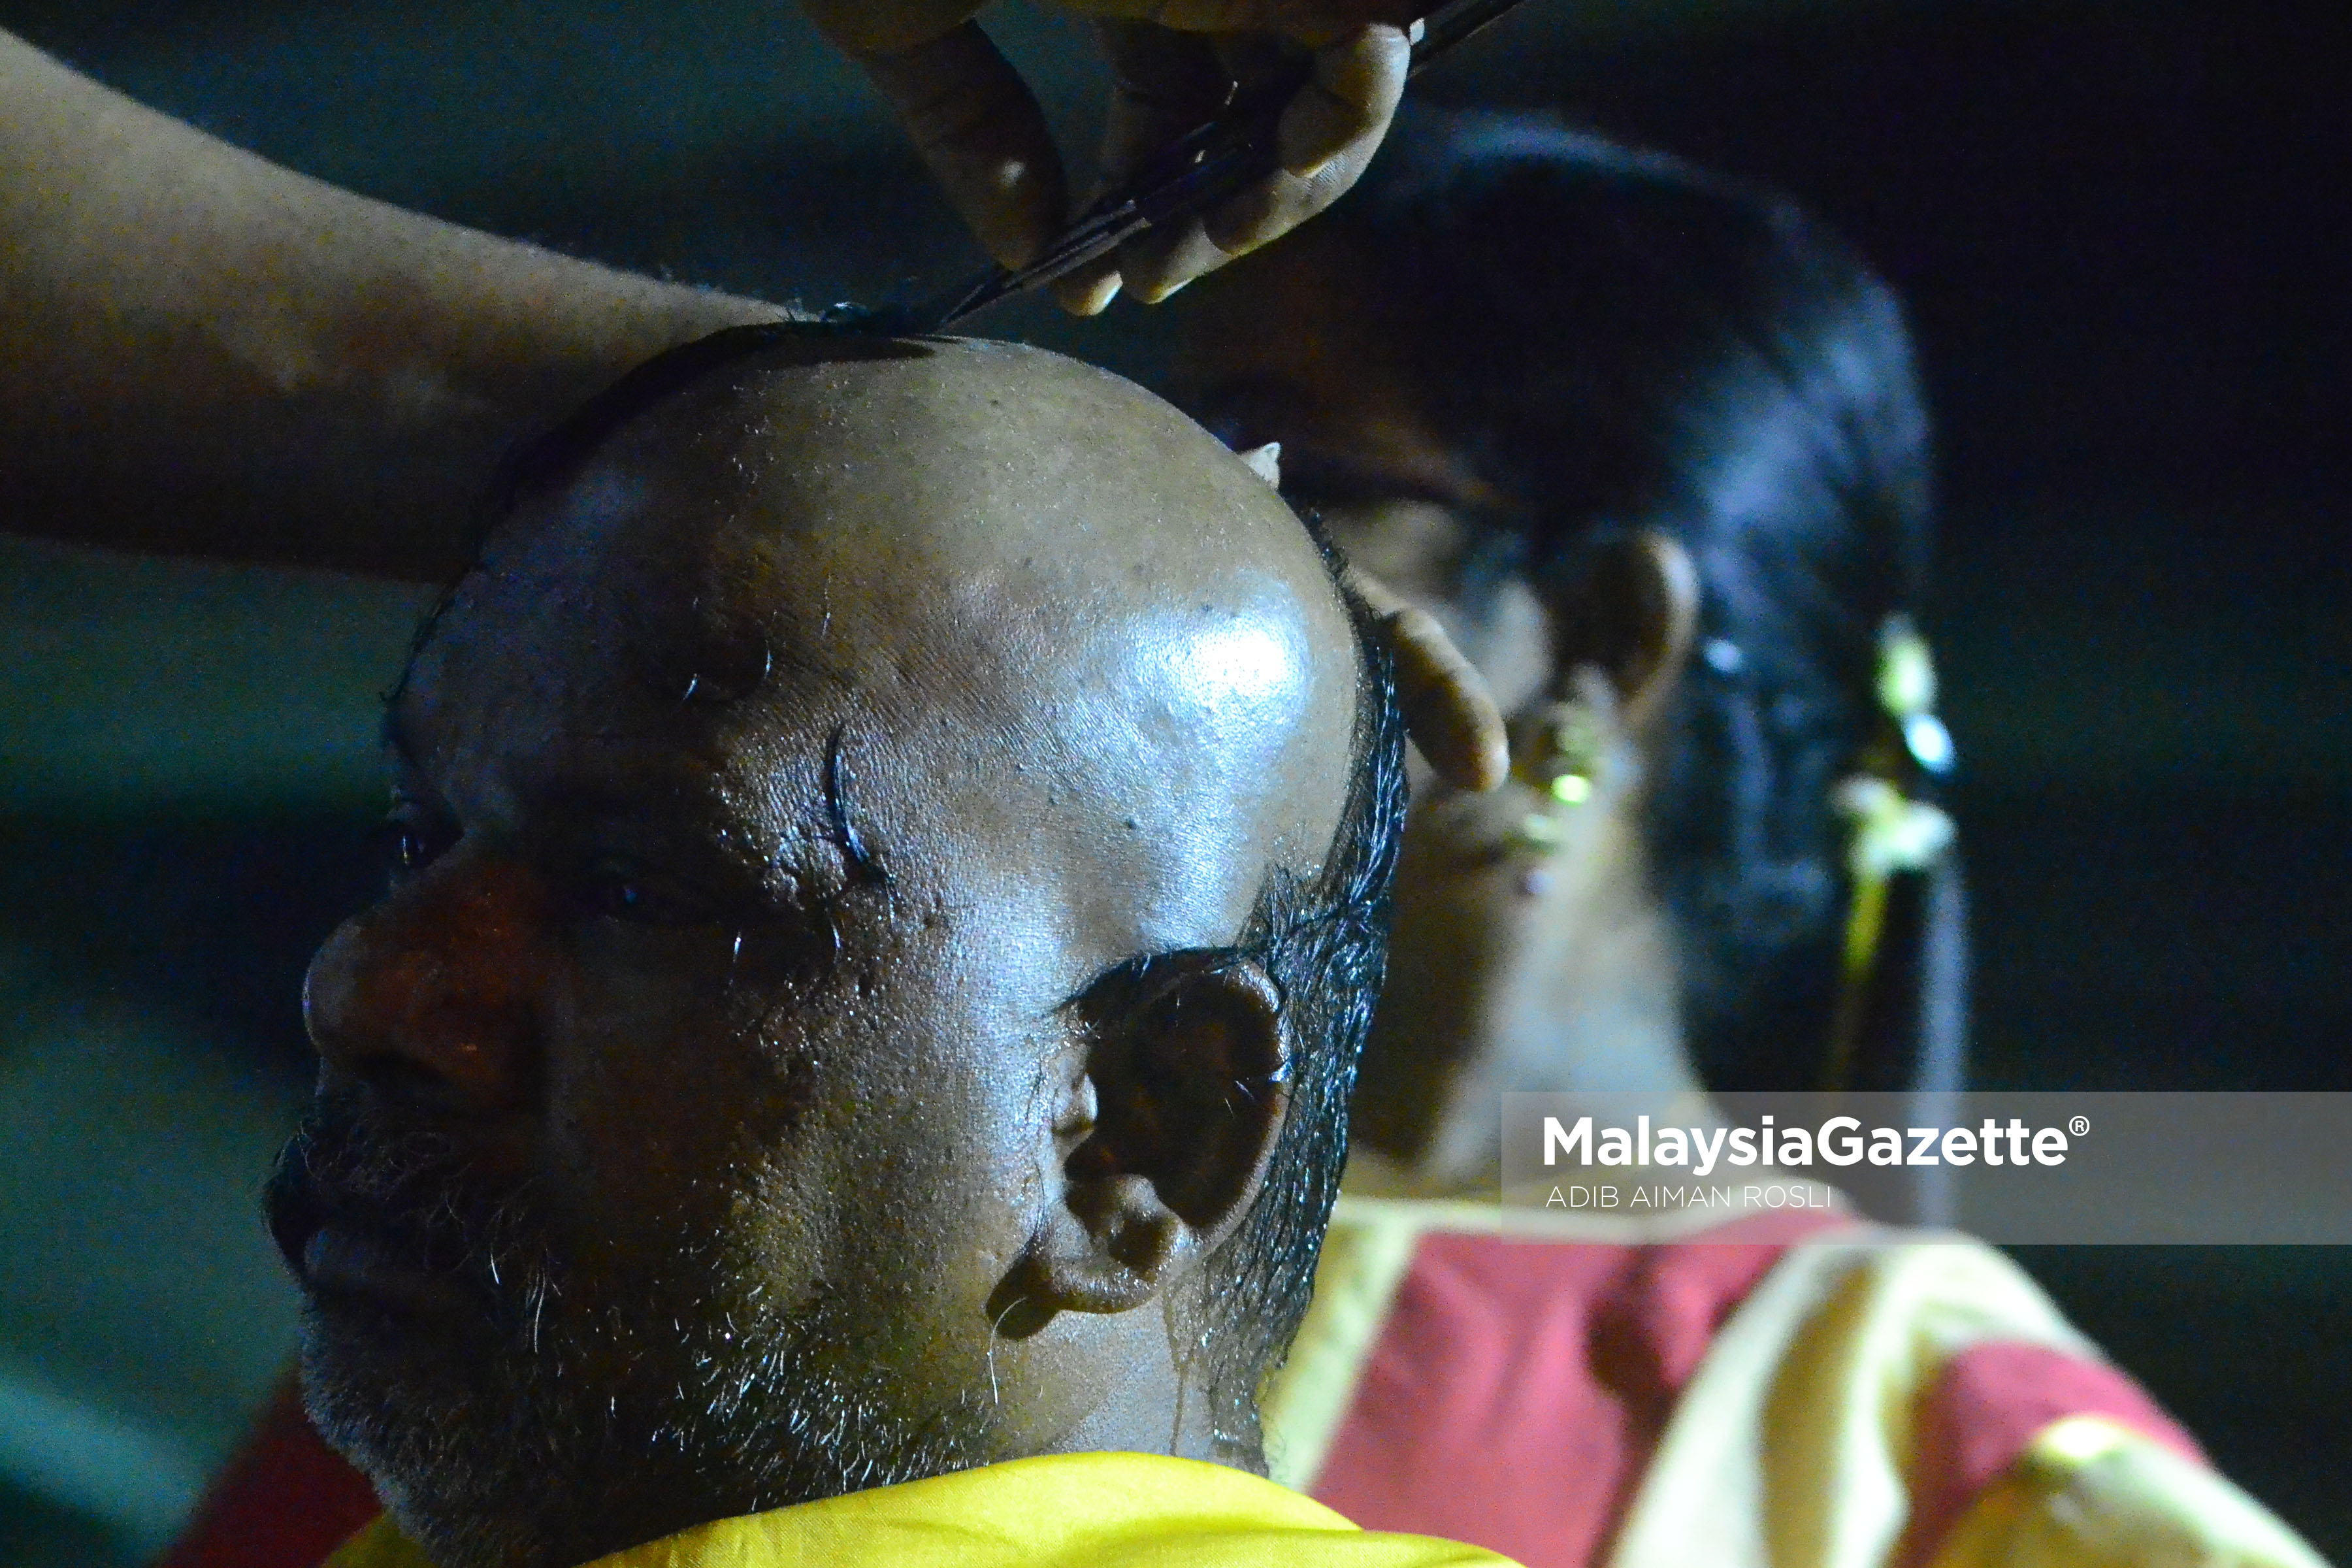 Seorang lelaki  dicukur rambutnya untuk ritual keagamaan sempena sambutan hari perayaan Thaipusam di Batu Caves, Selangor. foto ADIB AIMAN ROSLI, 09 FEBRUARI 2017